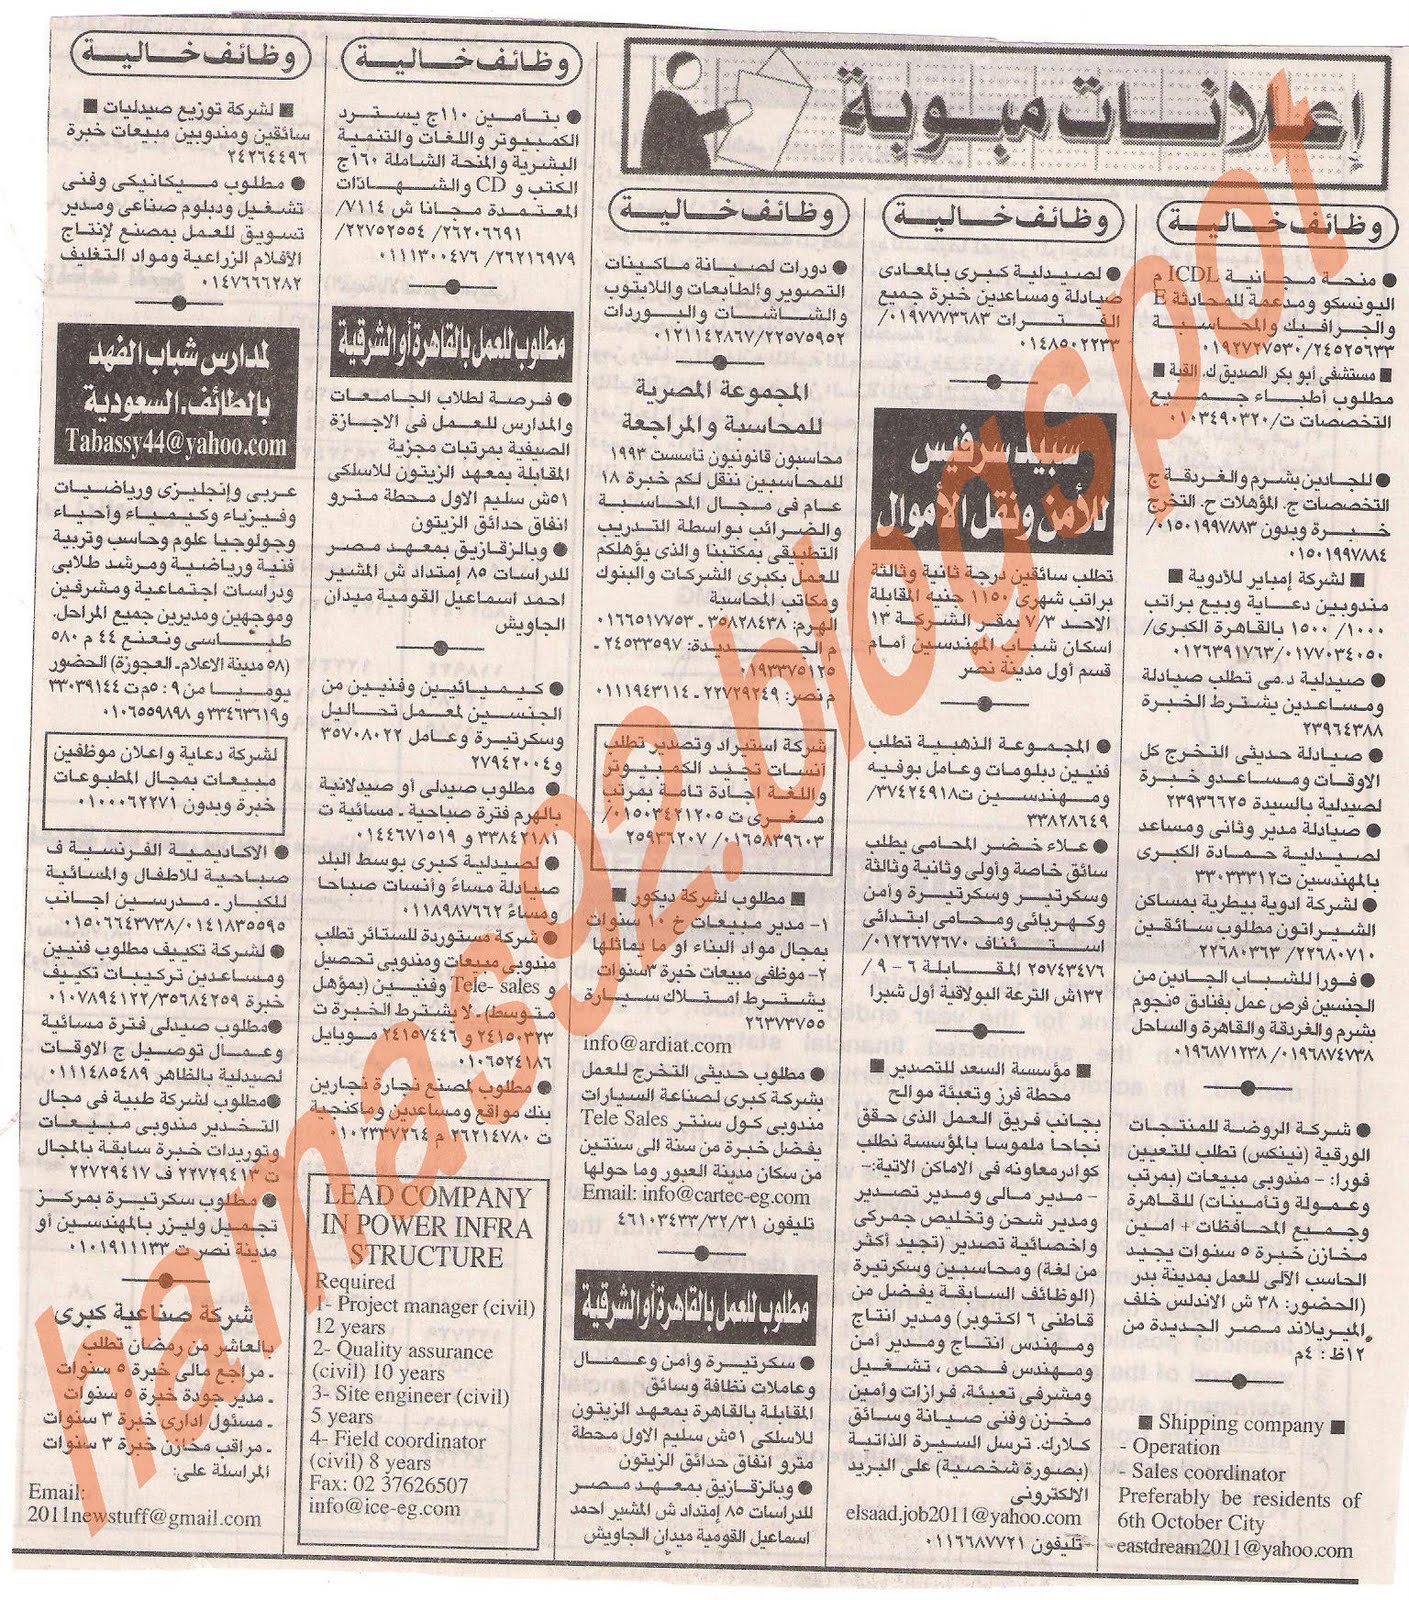 وظائف جريدة الاهرام الجمعة 1 يوليو 2011 - الجزء الثانى Picture+002